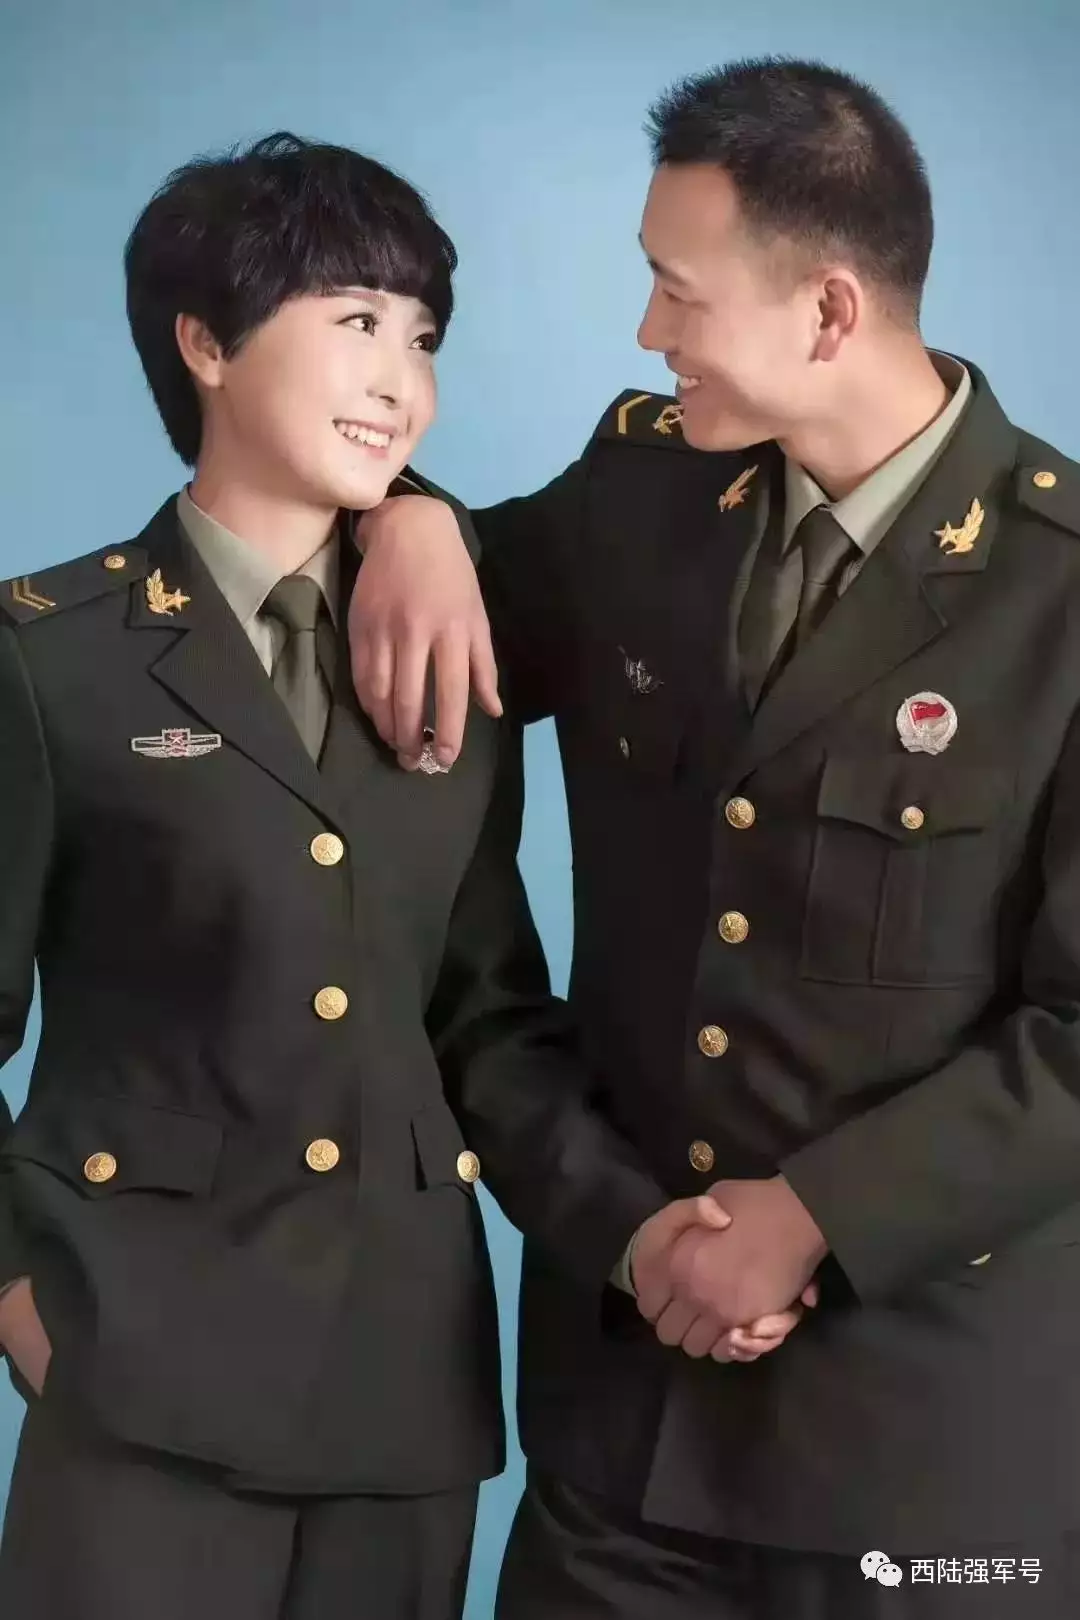 4、研究生跟军官结婚配吗:现在的女研究生愿意嫁给军官的多吗？